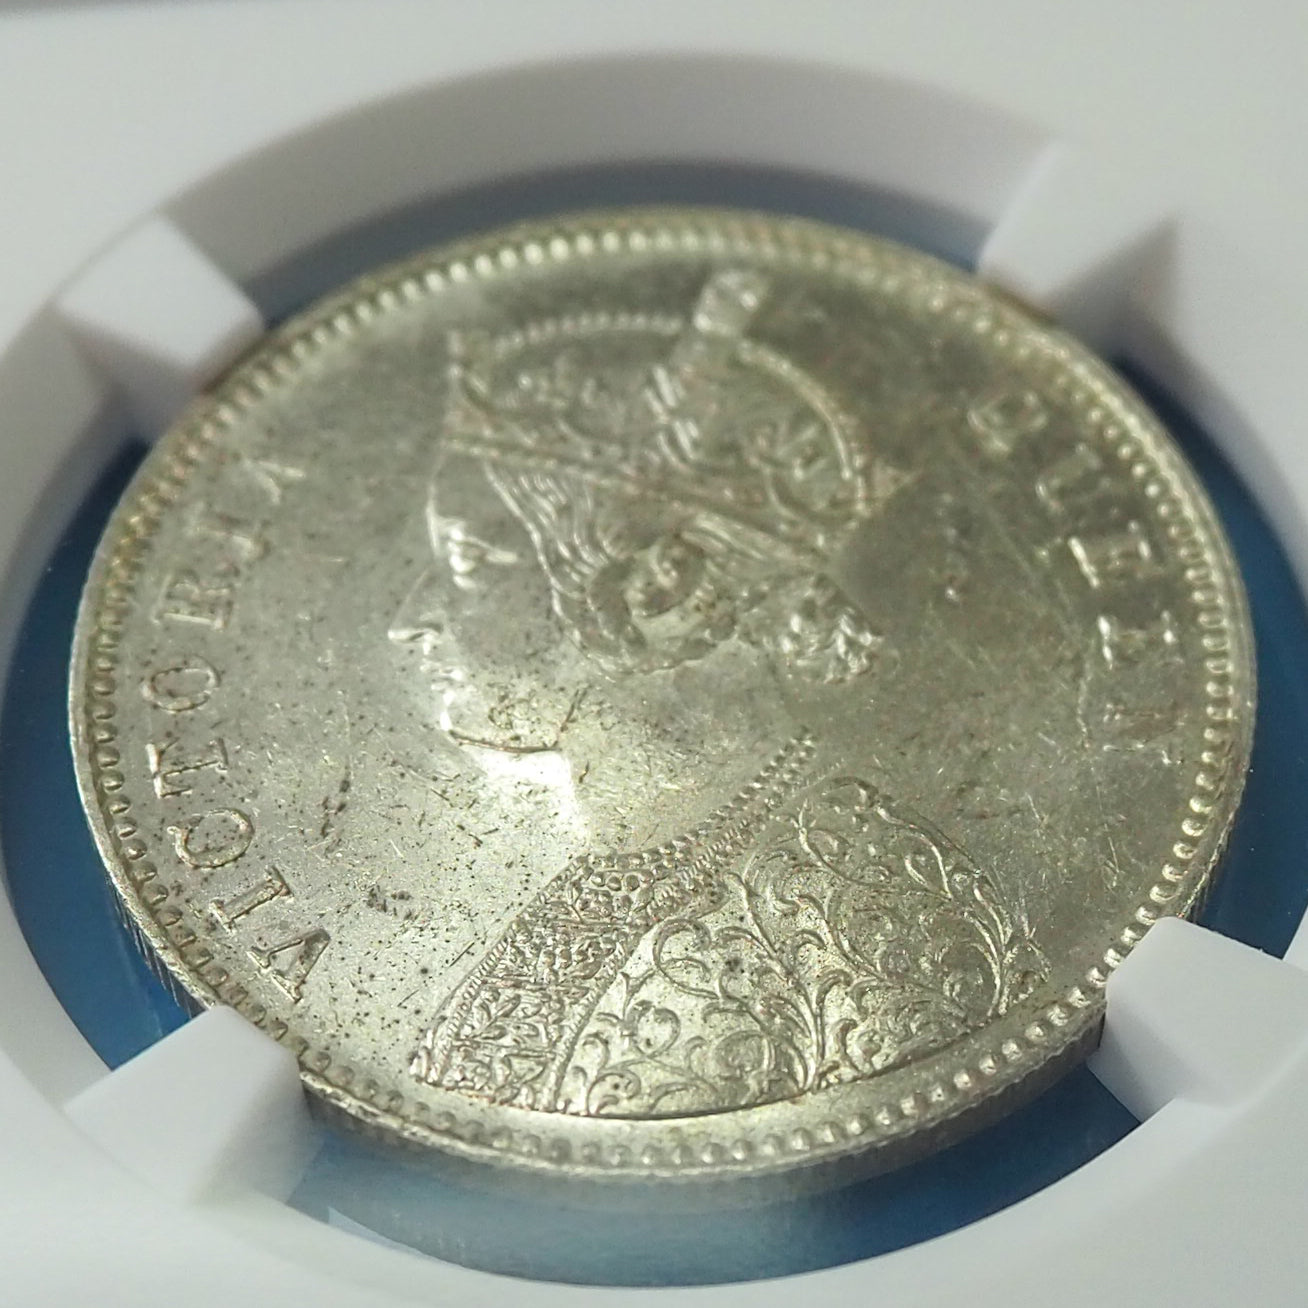 【星10個のレアタイプ】イギリス領インド ルピー銀貨 ヴィクトリア 1862(B) MS62